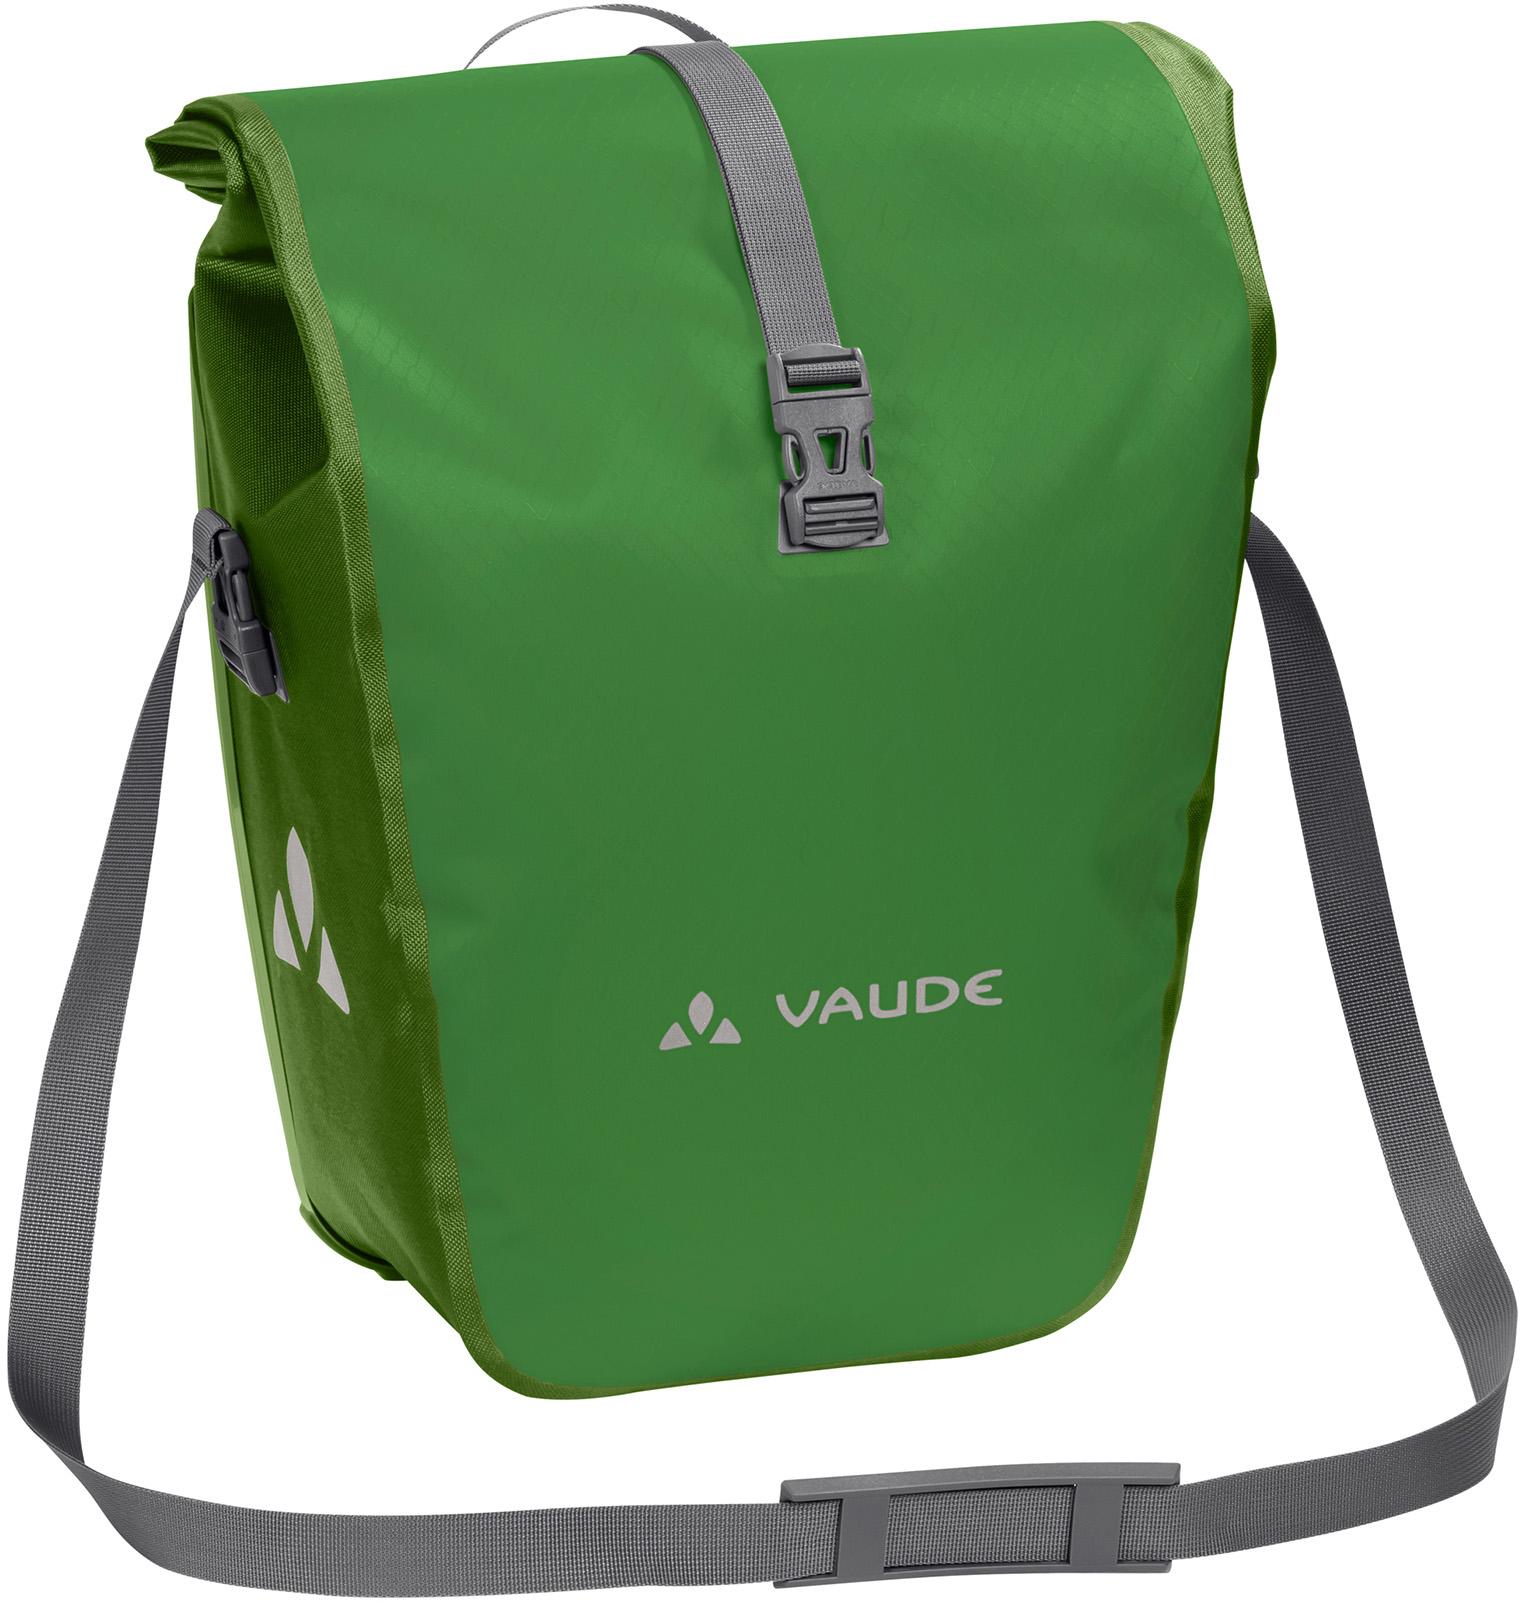 Vaude Aqua Back Rear Pannier Bike Bag - Green